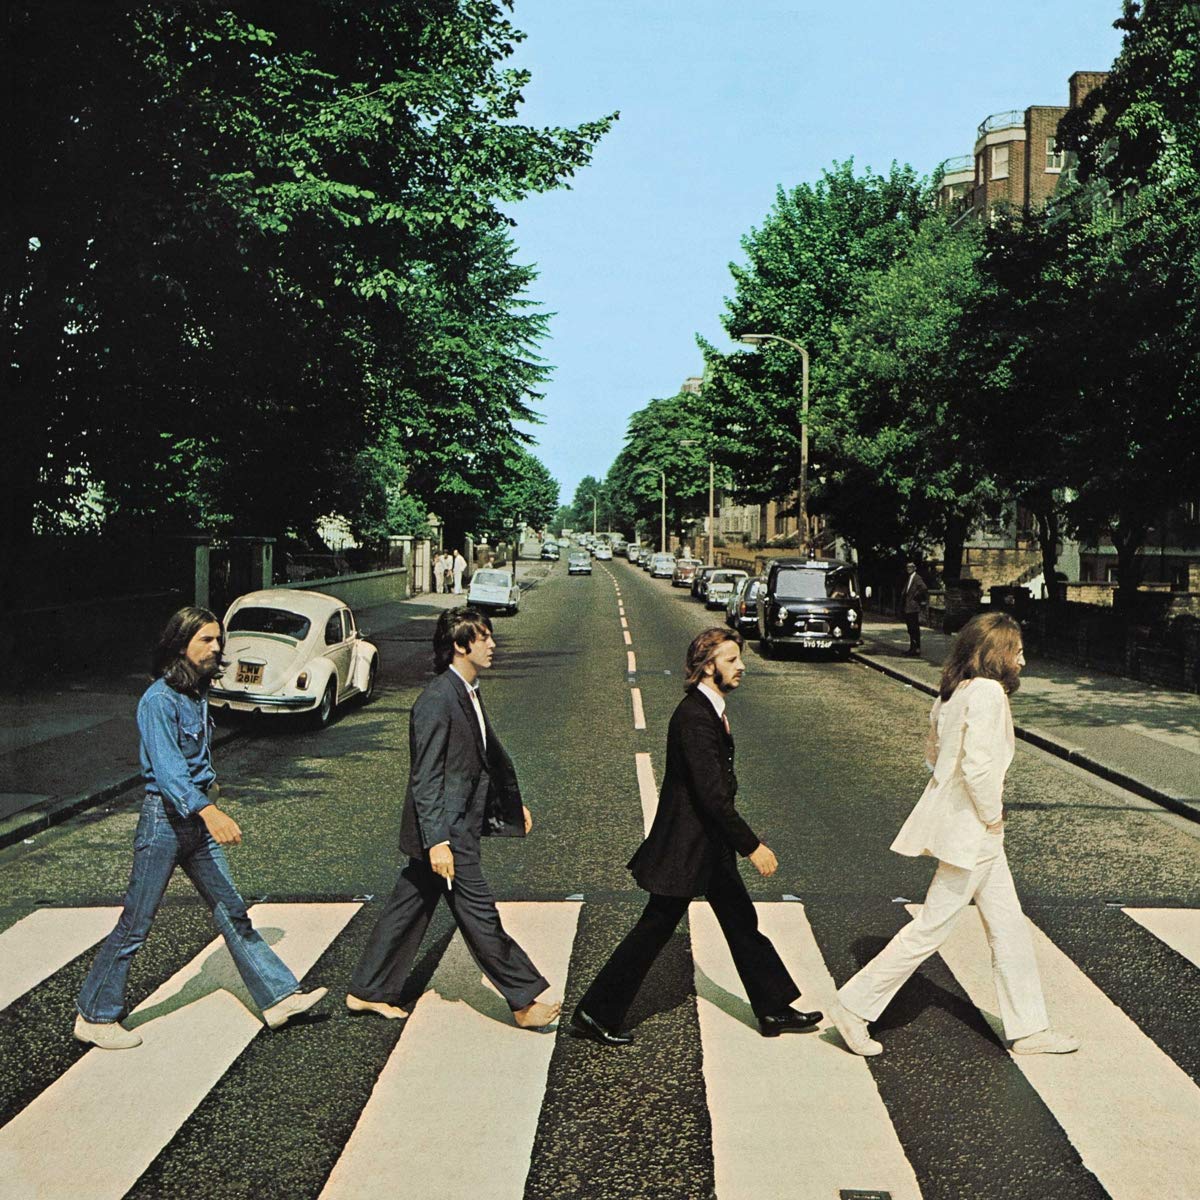 Album associé à la Sonne Aufm Bauch par Hoppebräu. The Beatles - Abbey Road